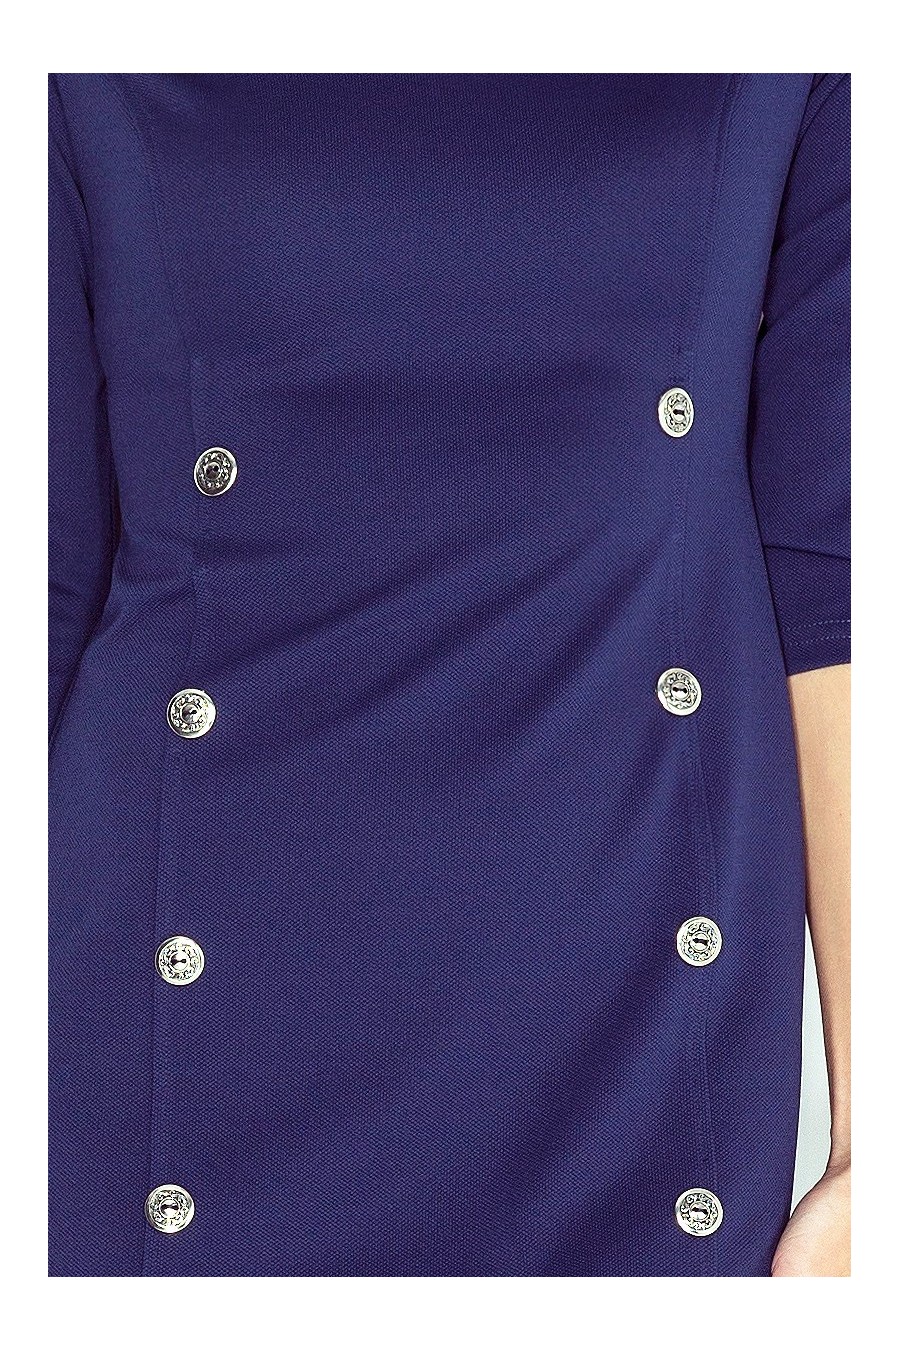 Šaty s knoflíky - tmave modra MM 019-1